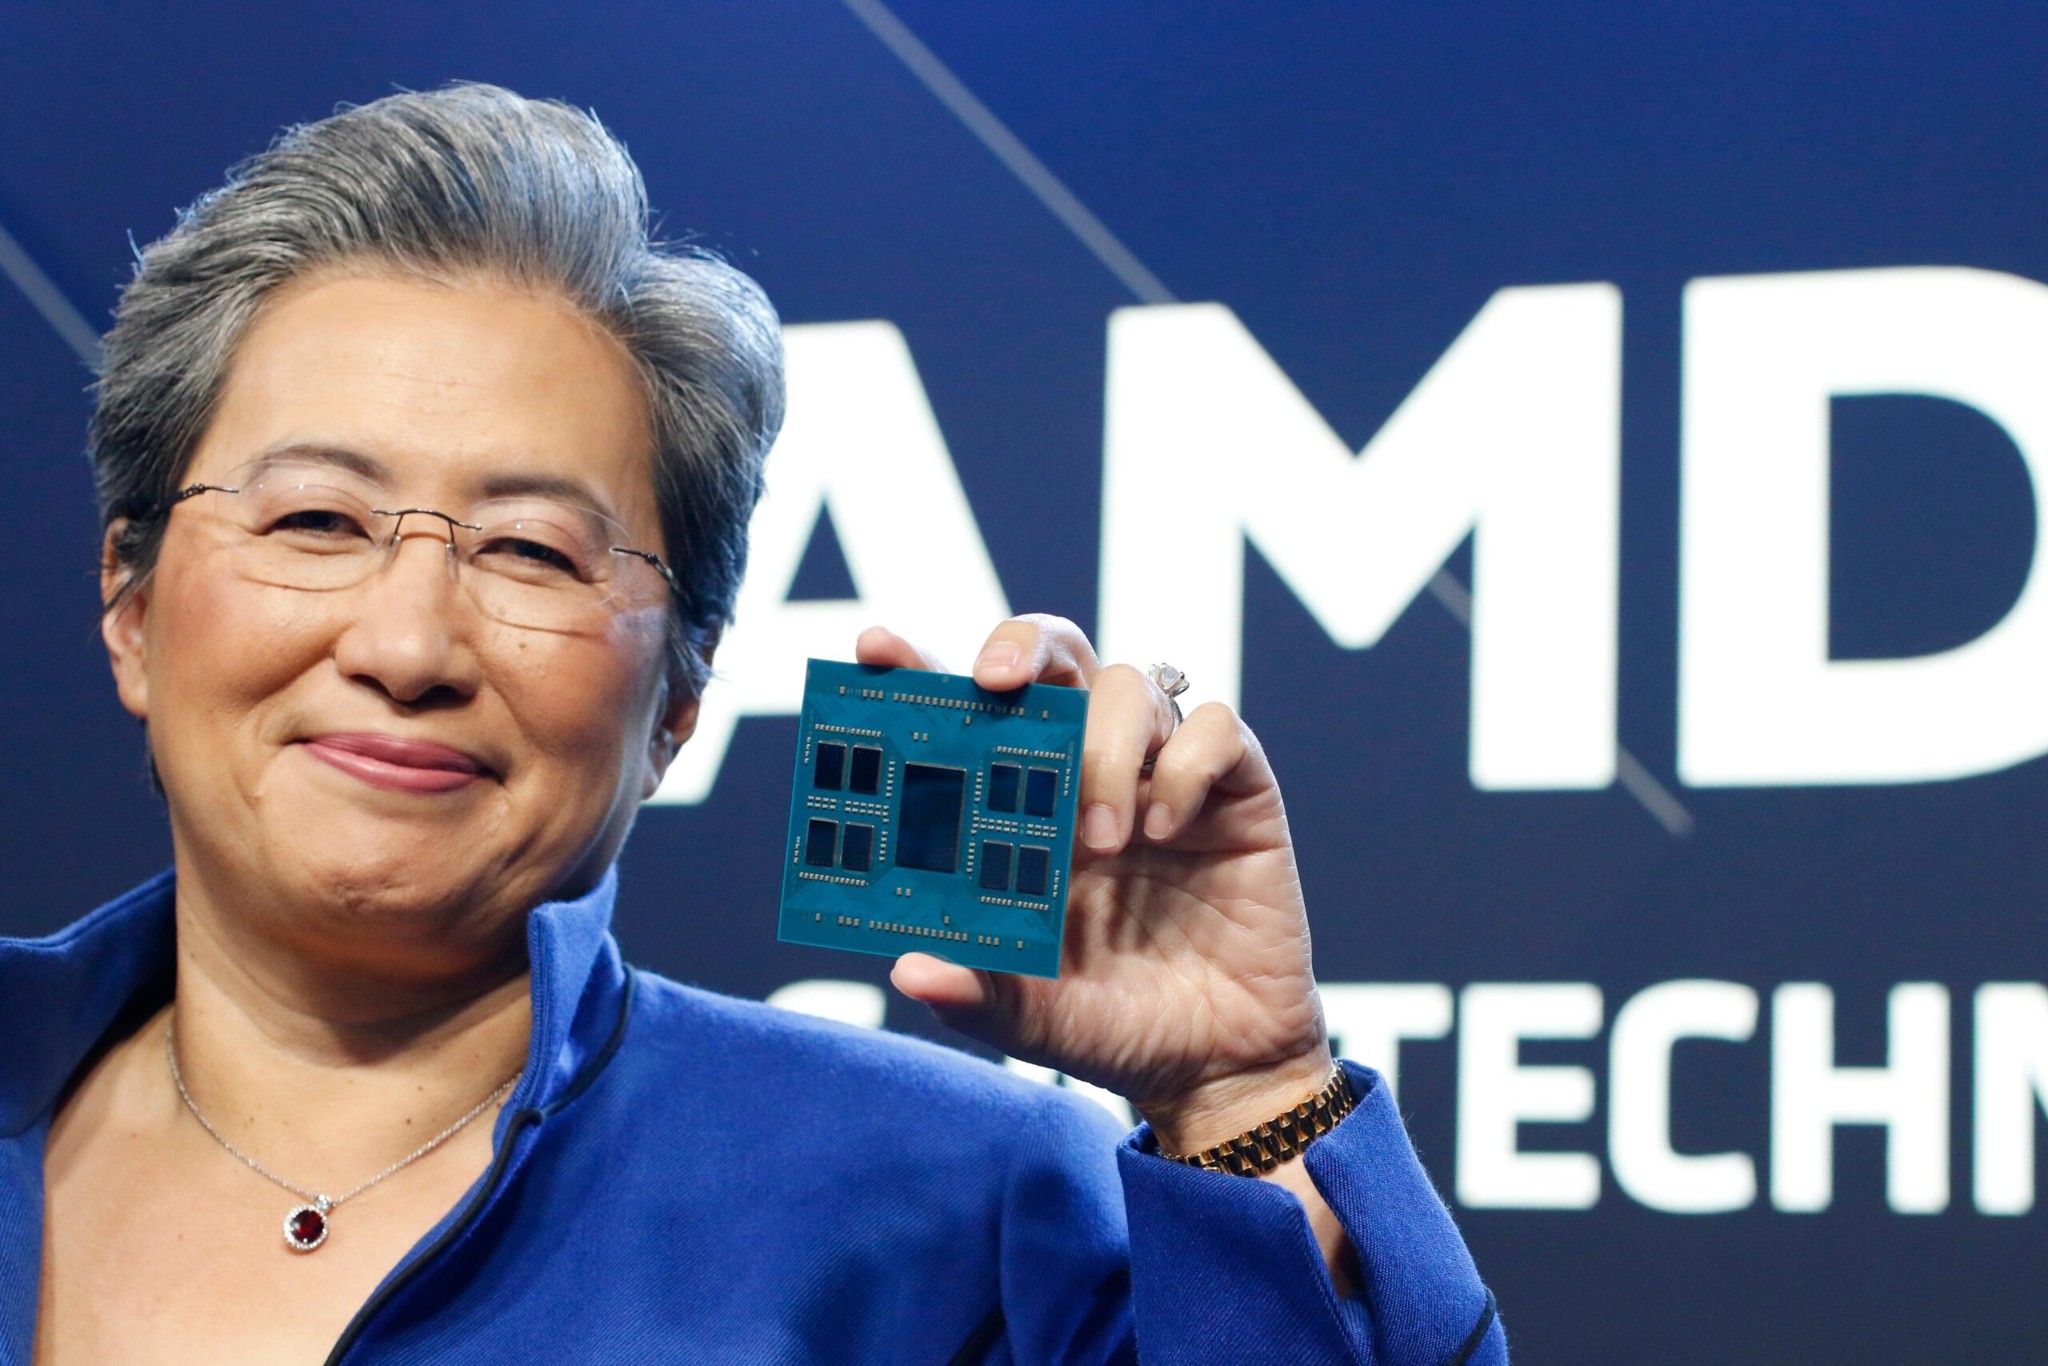 Nhân AMD “Zen 4c” không phải là E-core, nhỏ hơn 35% so với “Zen 4” nhưng hiệu năng vẫn tương đương